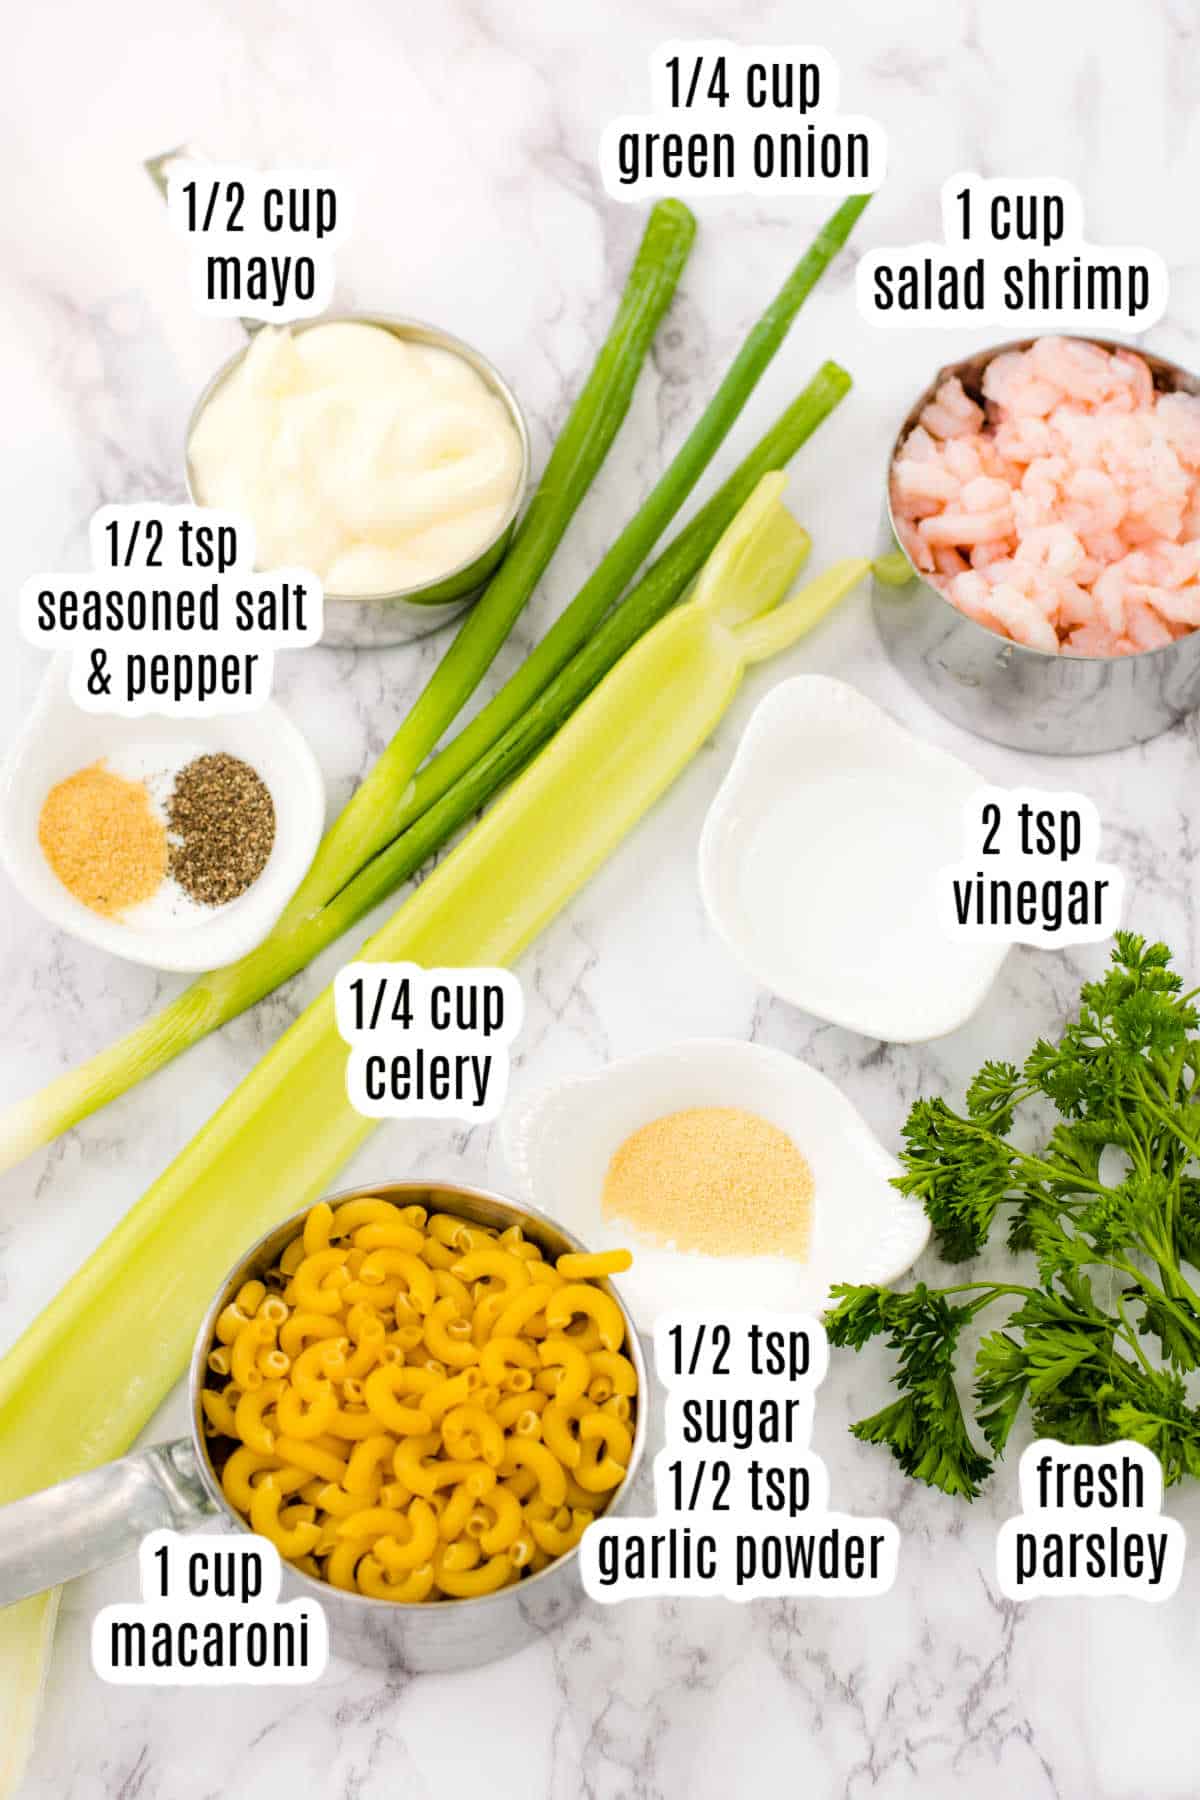 Labeled ingredients for shrimp macaroni salad.